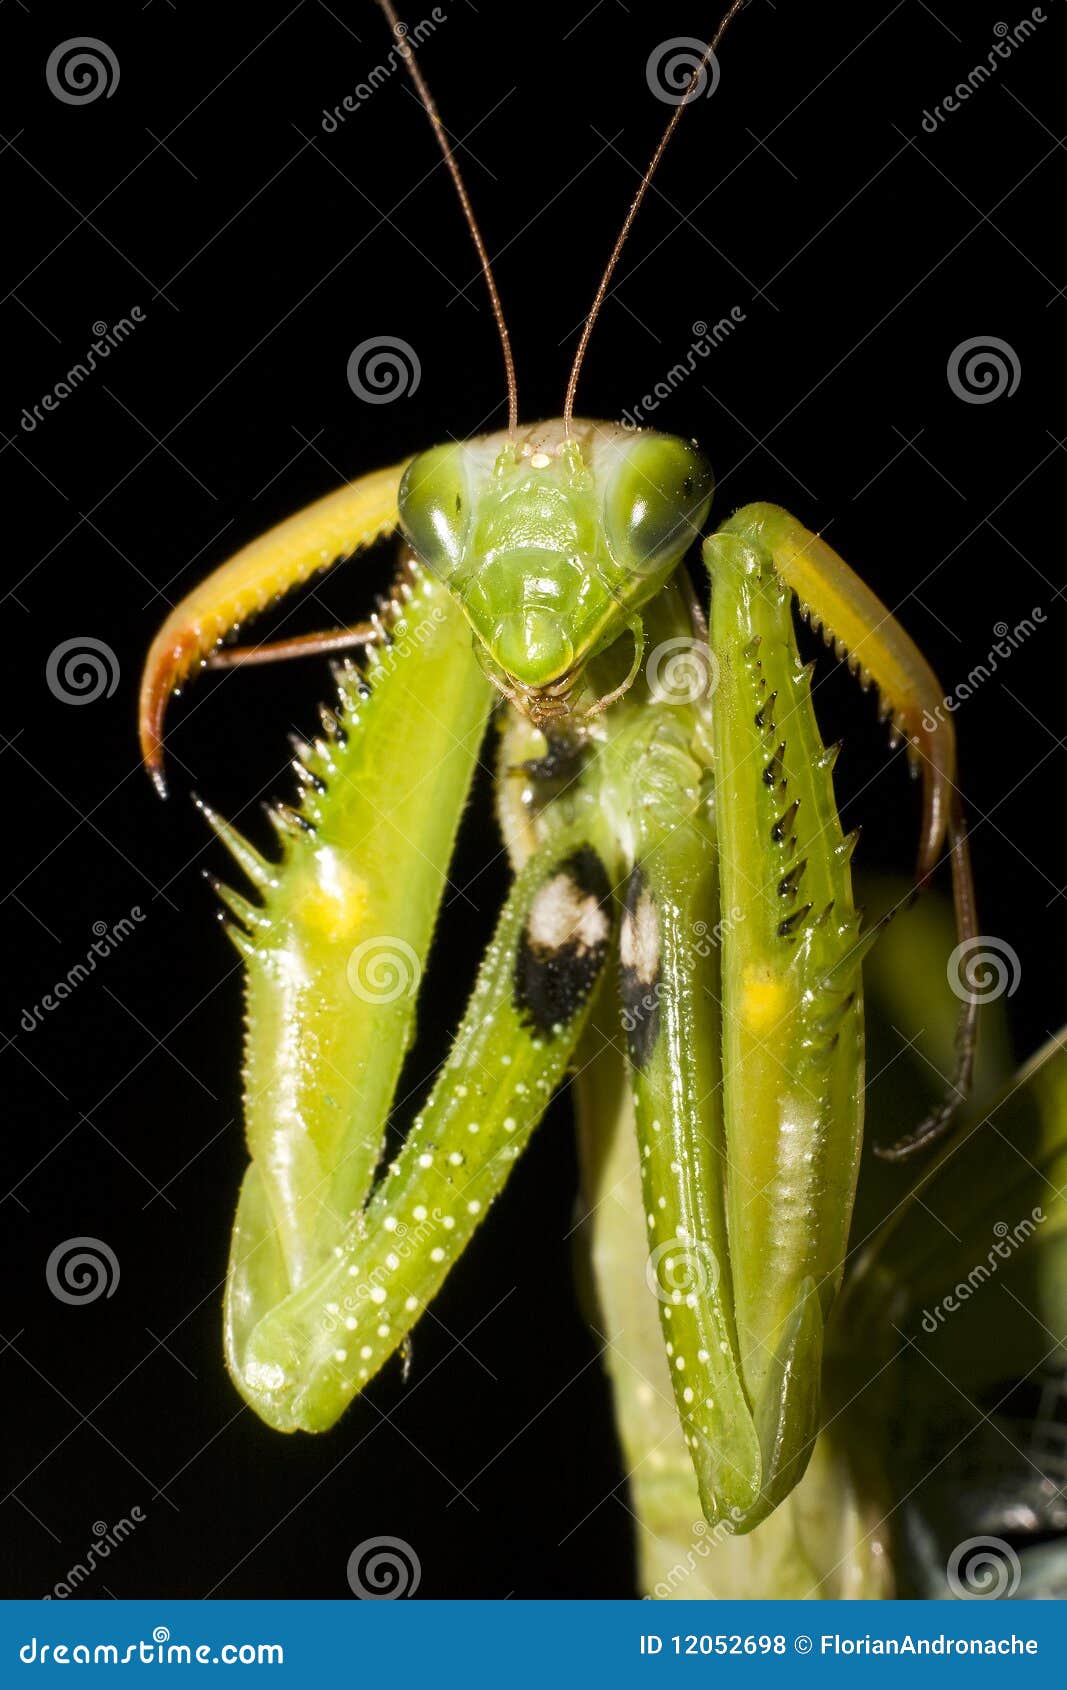 praying mantis / mantis religiosa